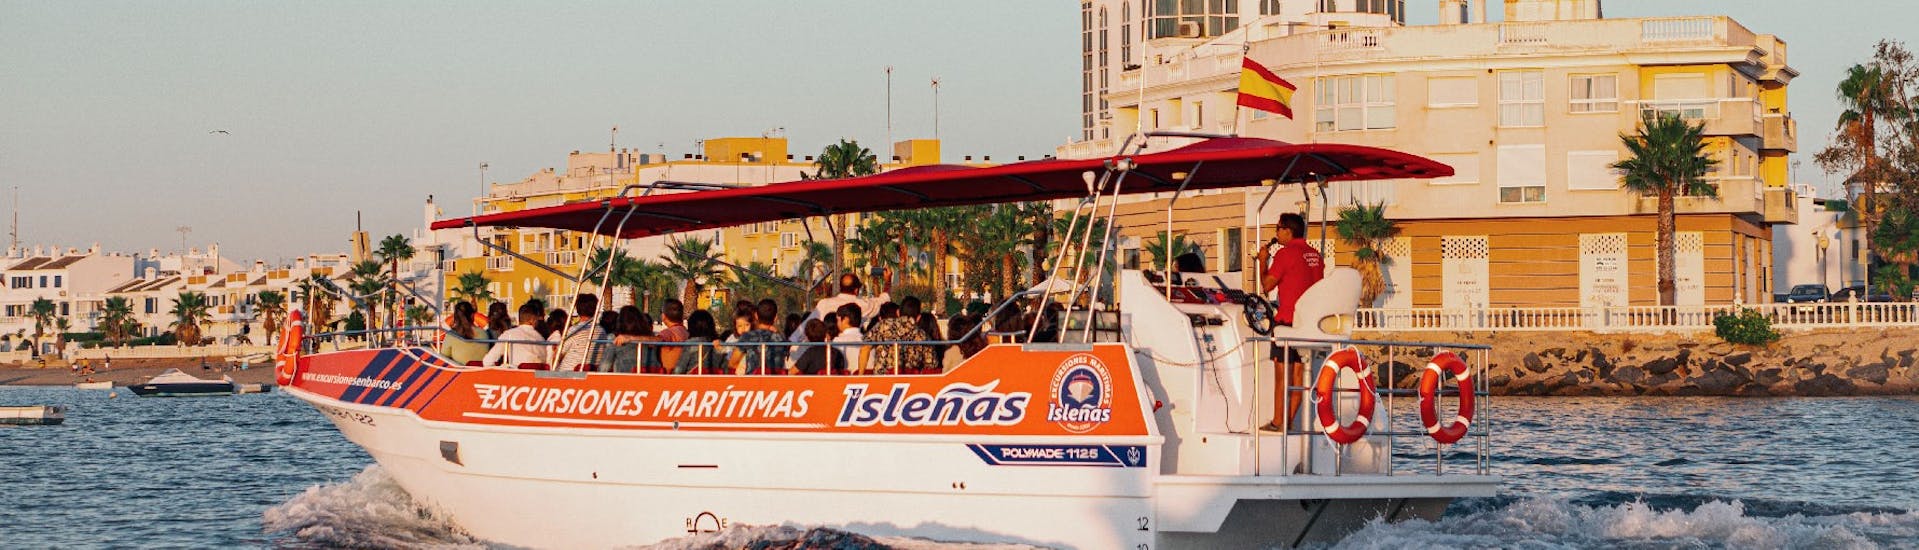 Bootstour entlang der Marismas de Isla Cristina mit Excursiones Marítimas Isleñas Huelva.